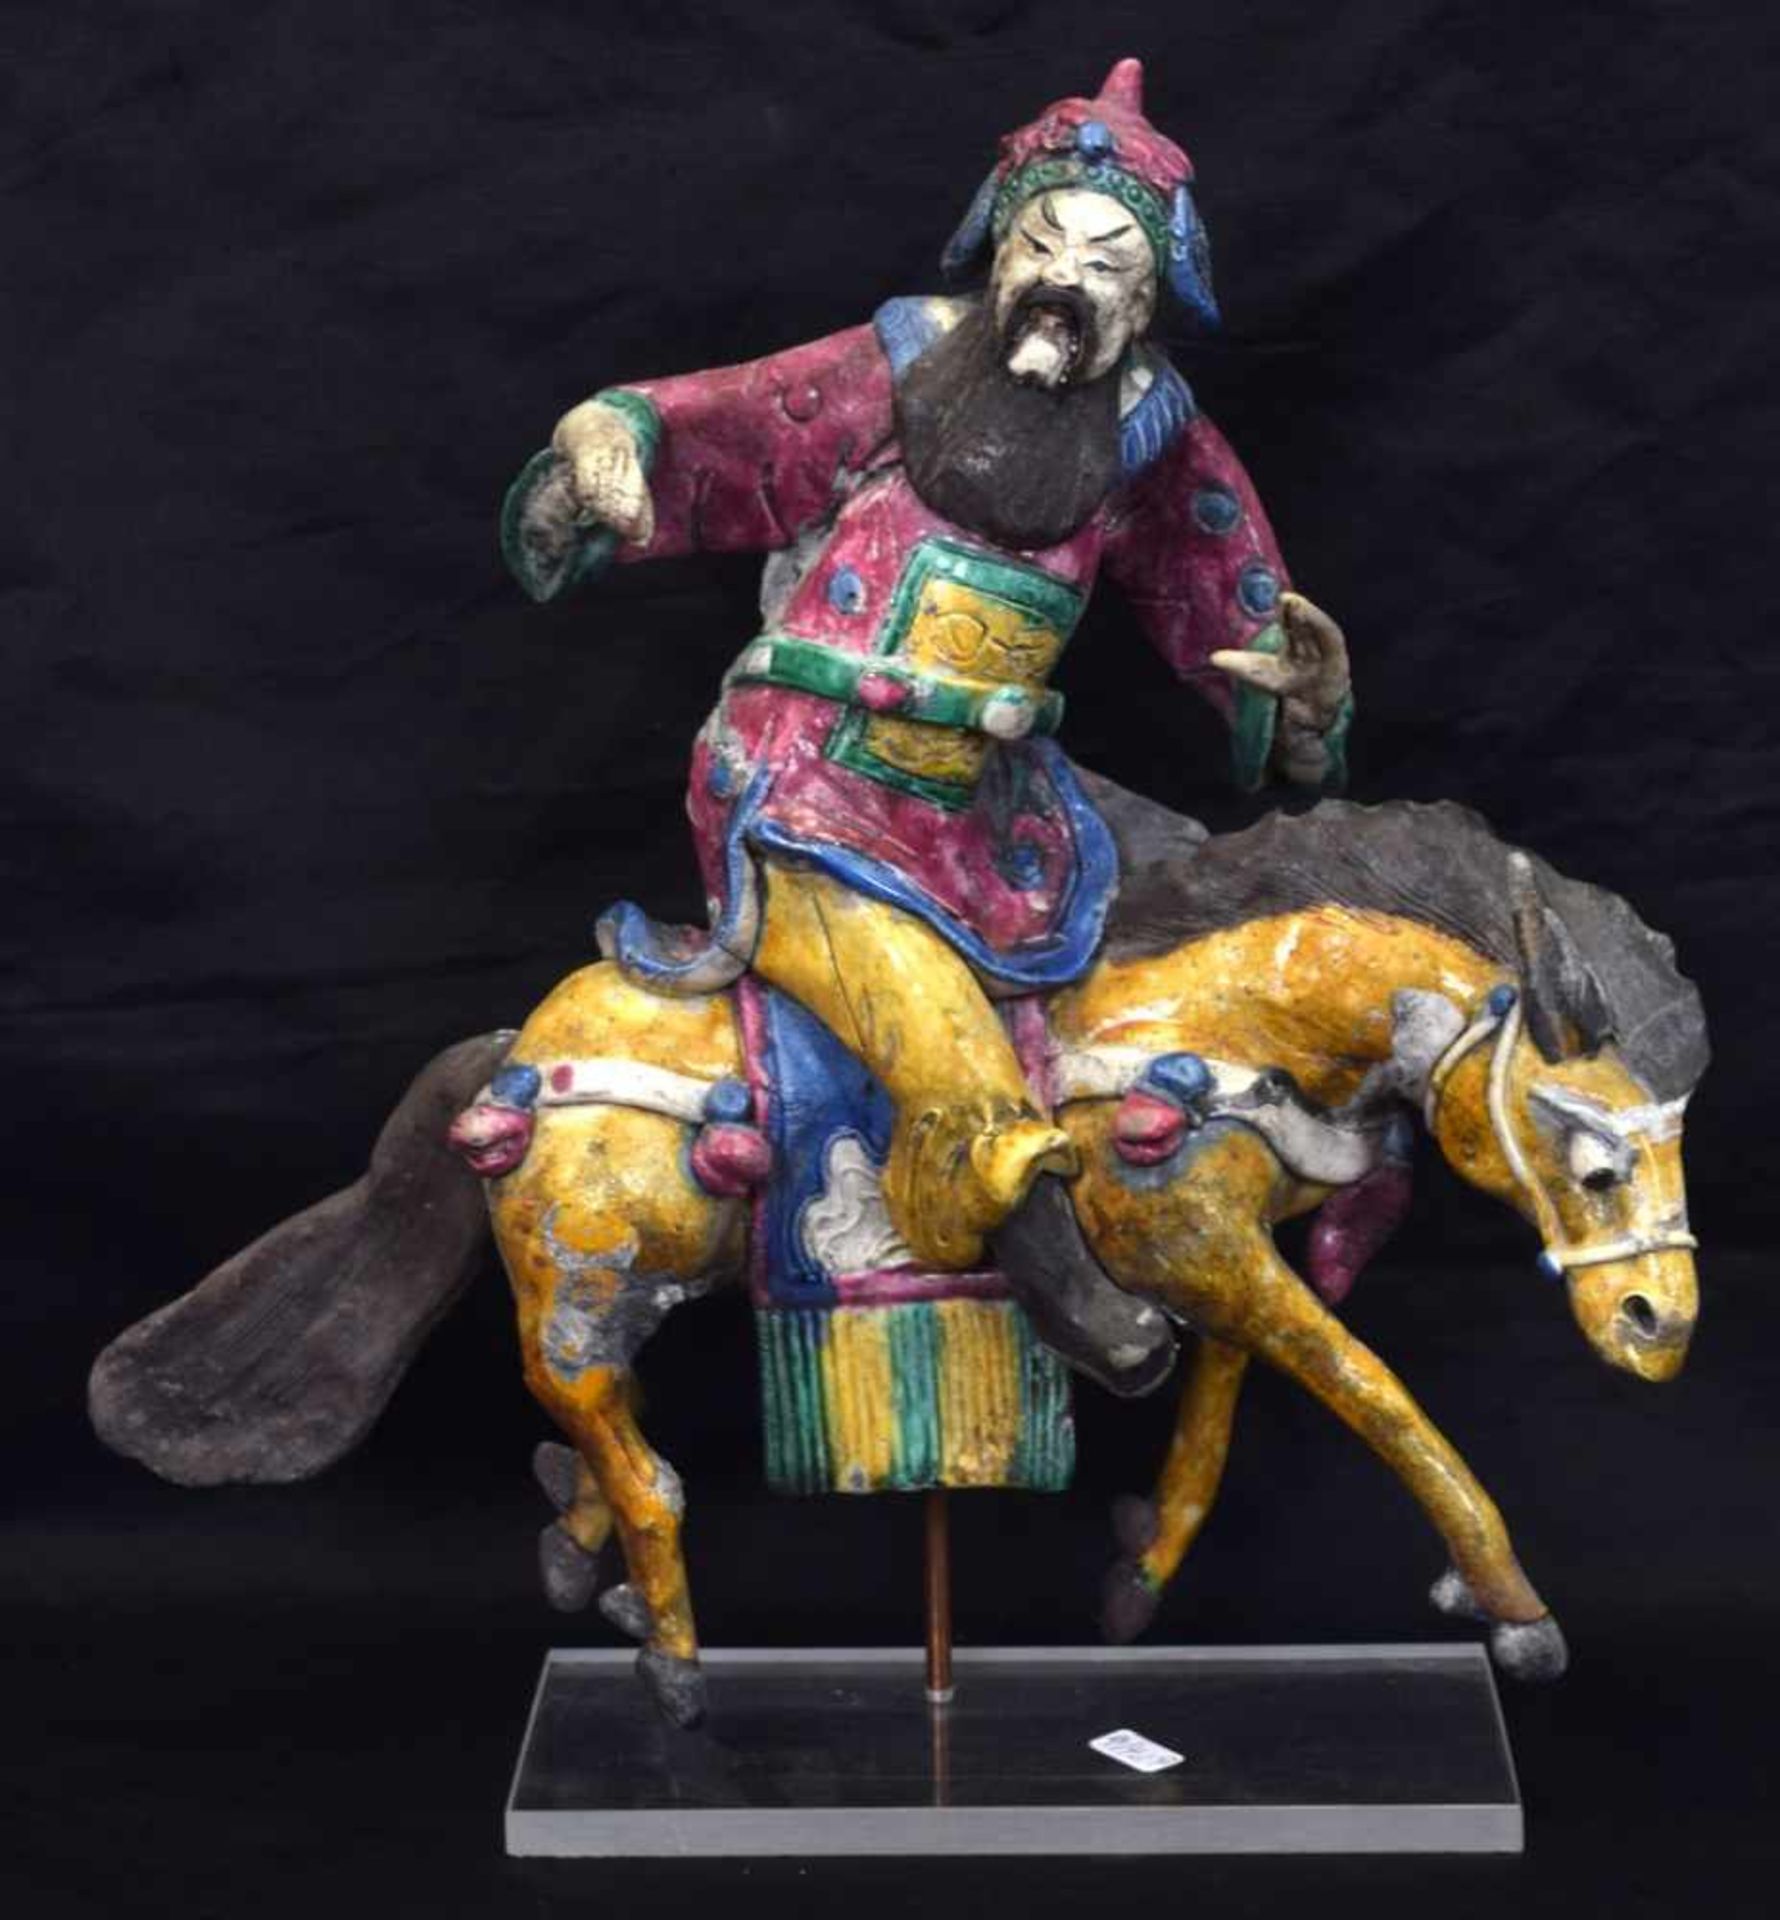 Asiatischer DachreiterTon, bunt bemalt, asiatischer Reiter zu Pferd, auf Acrylsockel stehend, H 31